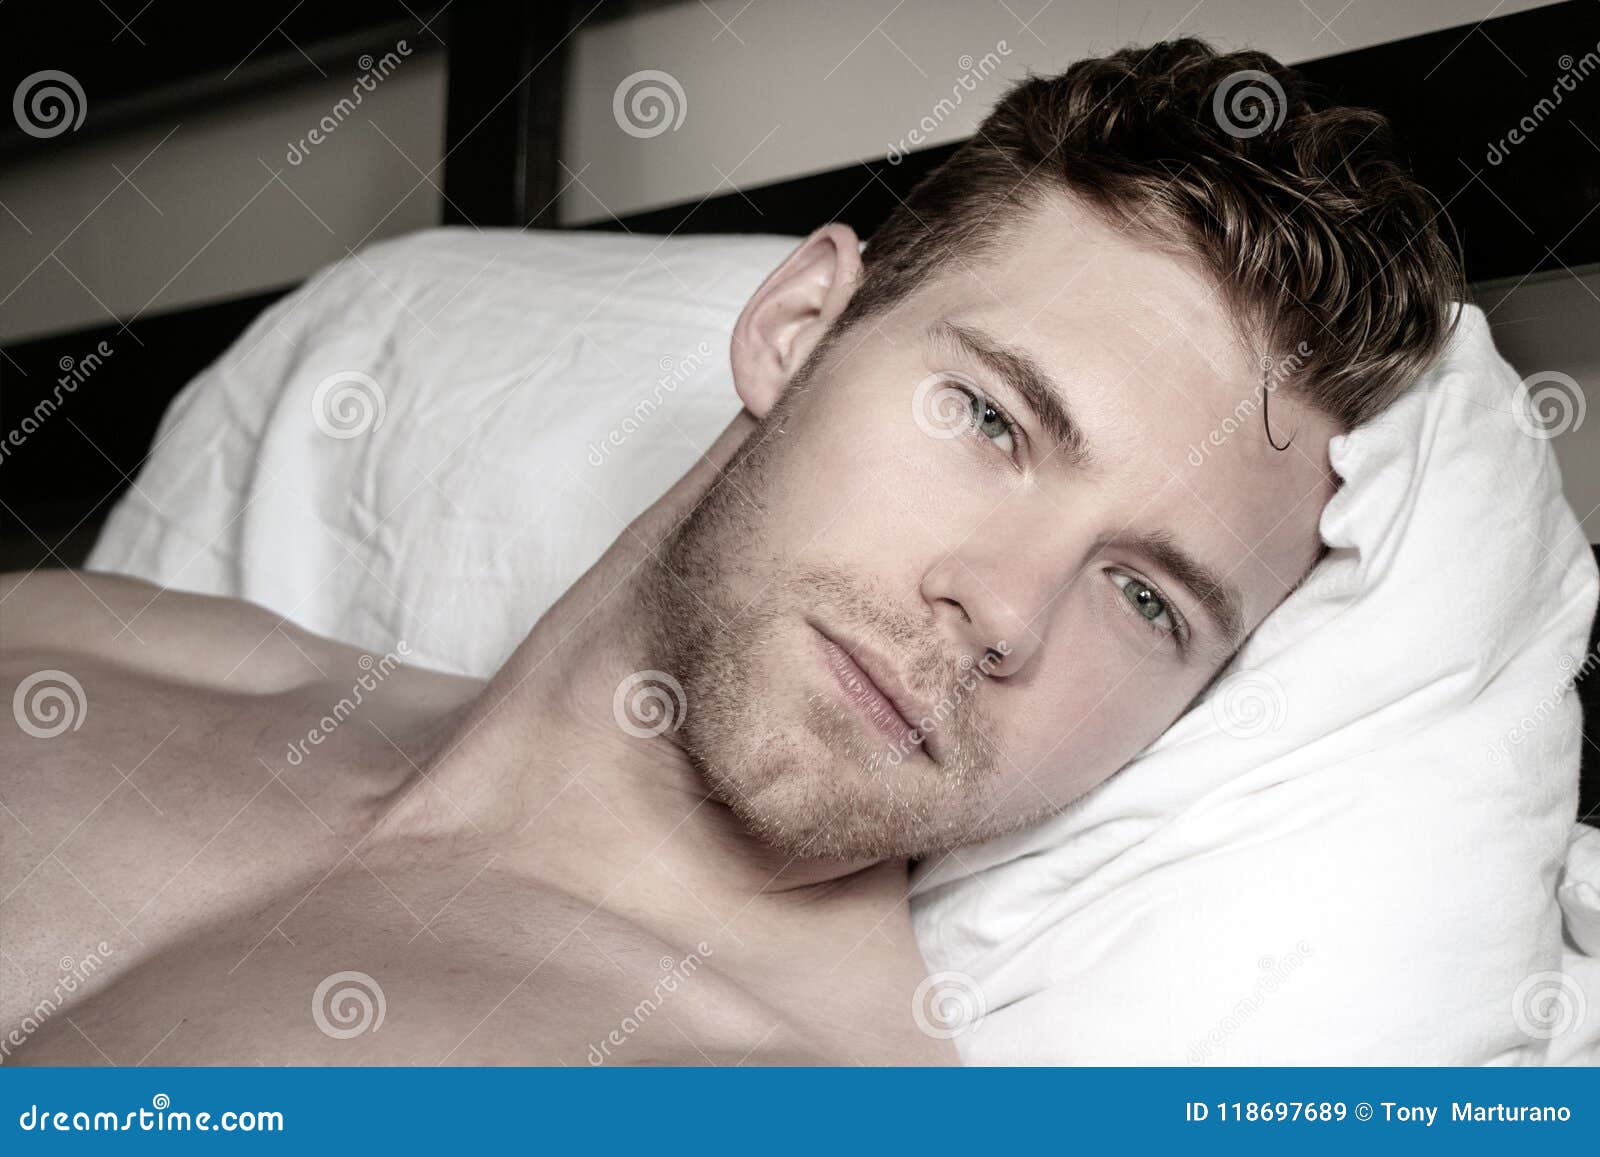 man naked bed selfie